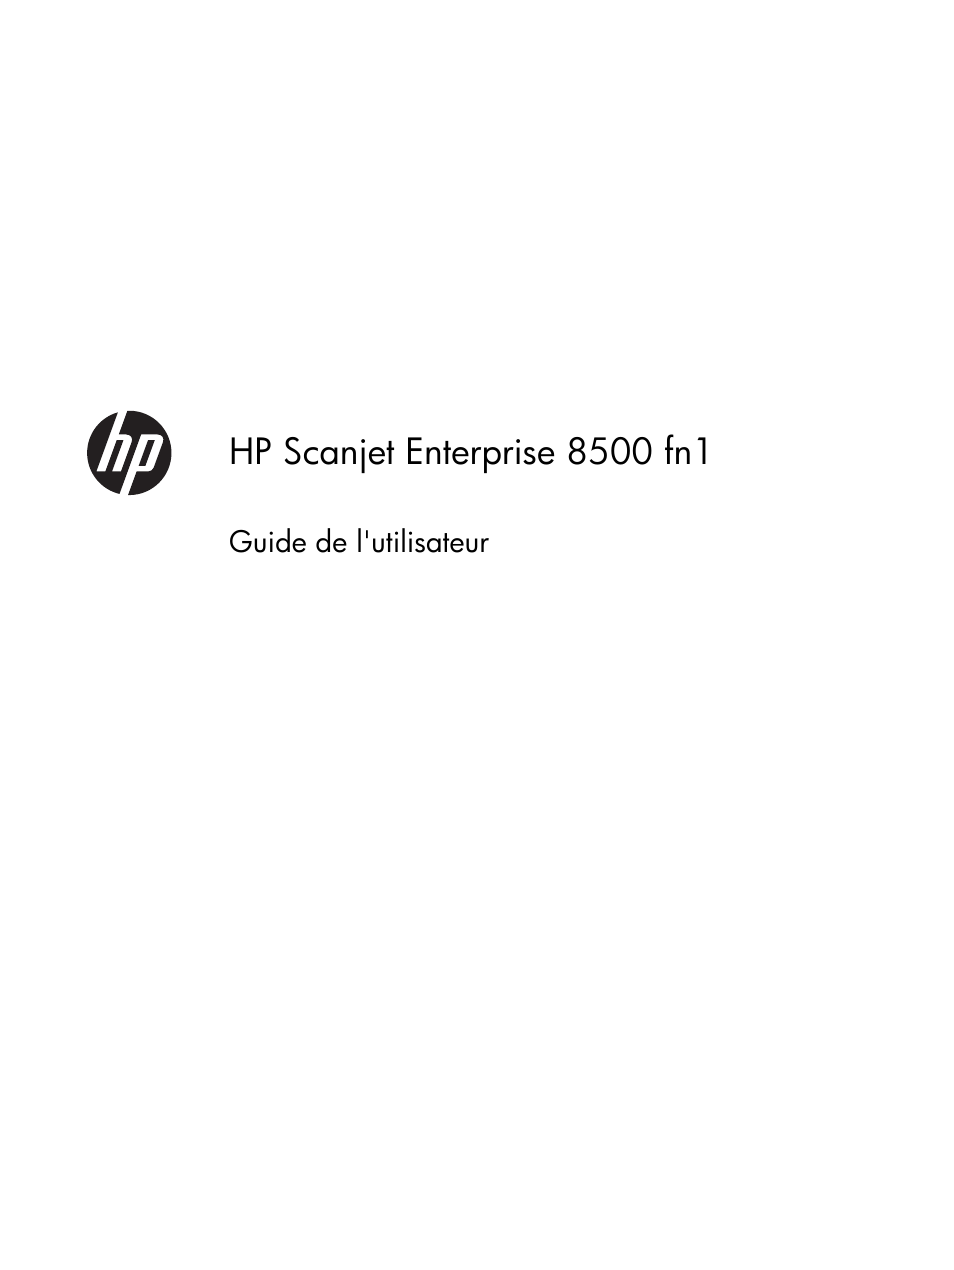 HP Station de travail de capture de document HP Scanjet Enterprise 8500 fn1 Manuel d'utilisation | Pages: 108